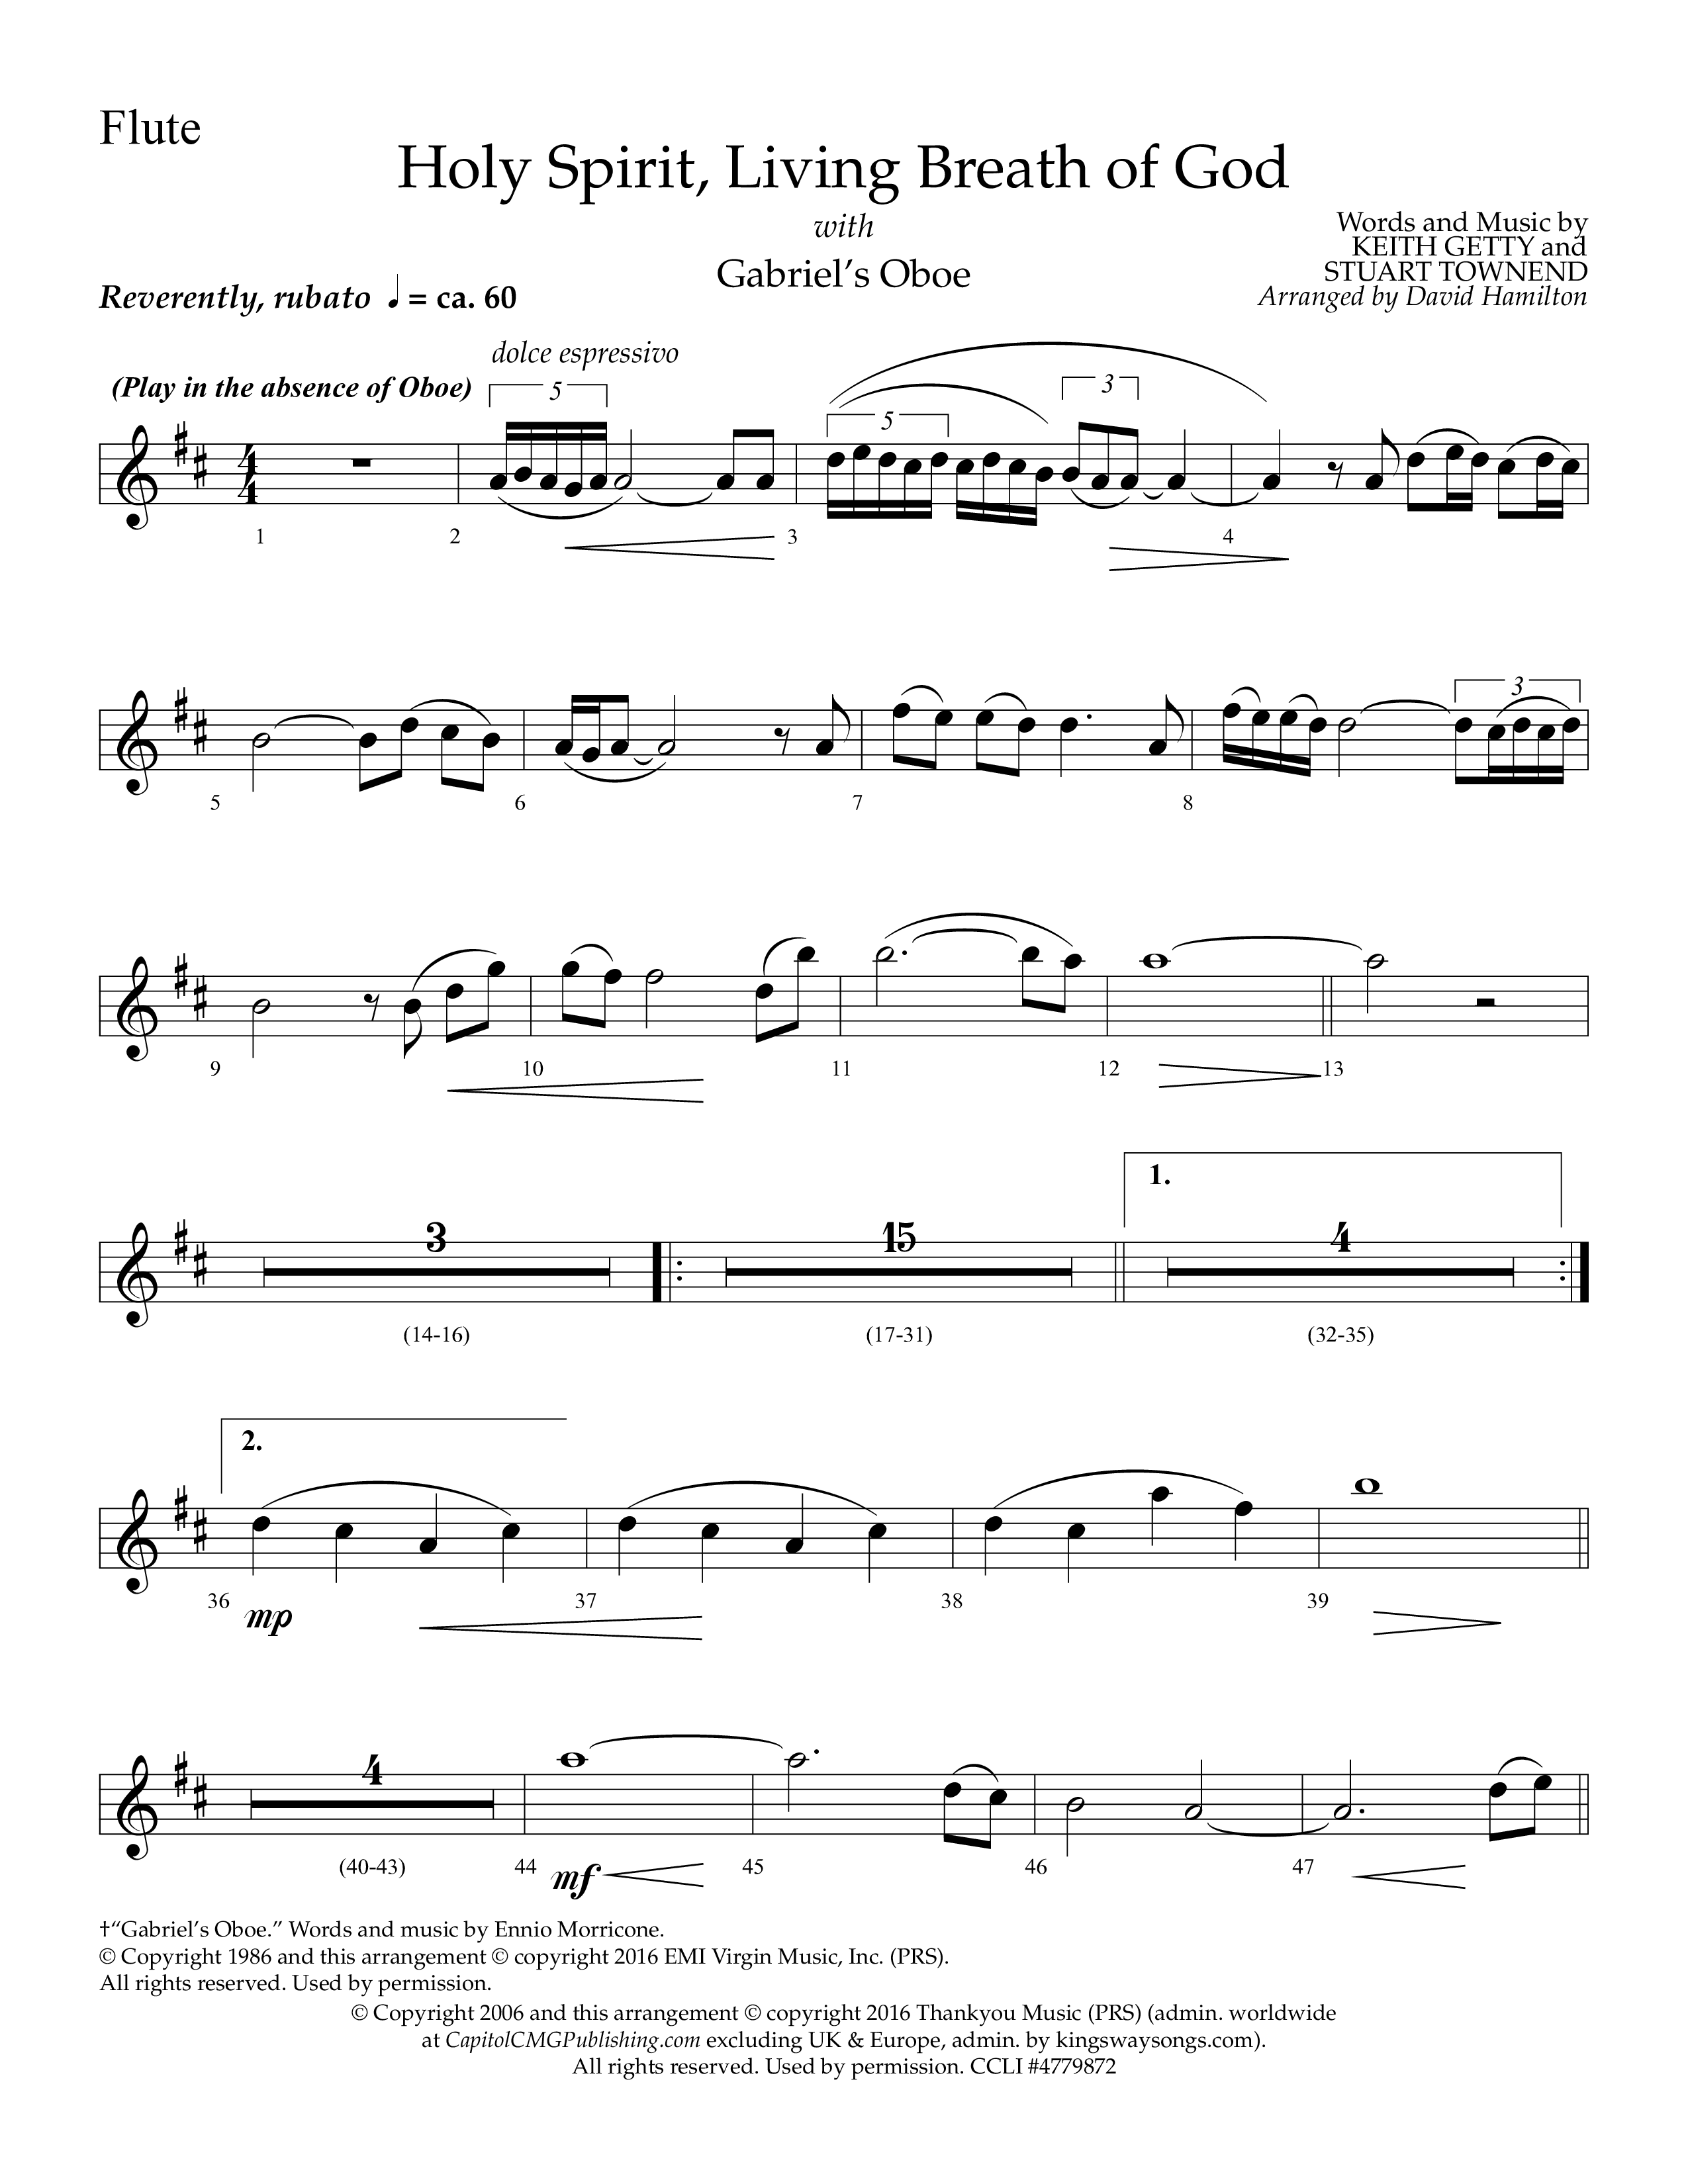 Holy Spirit Living Breath Of God (with Gabriel's Oboe) (Choral Anthem SATB) Flute (Lifeway Choral / Arr. David Hamilton)